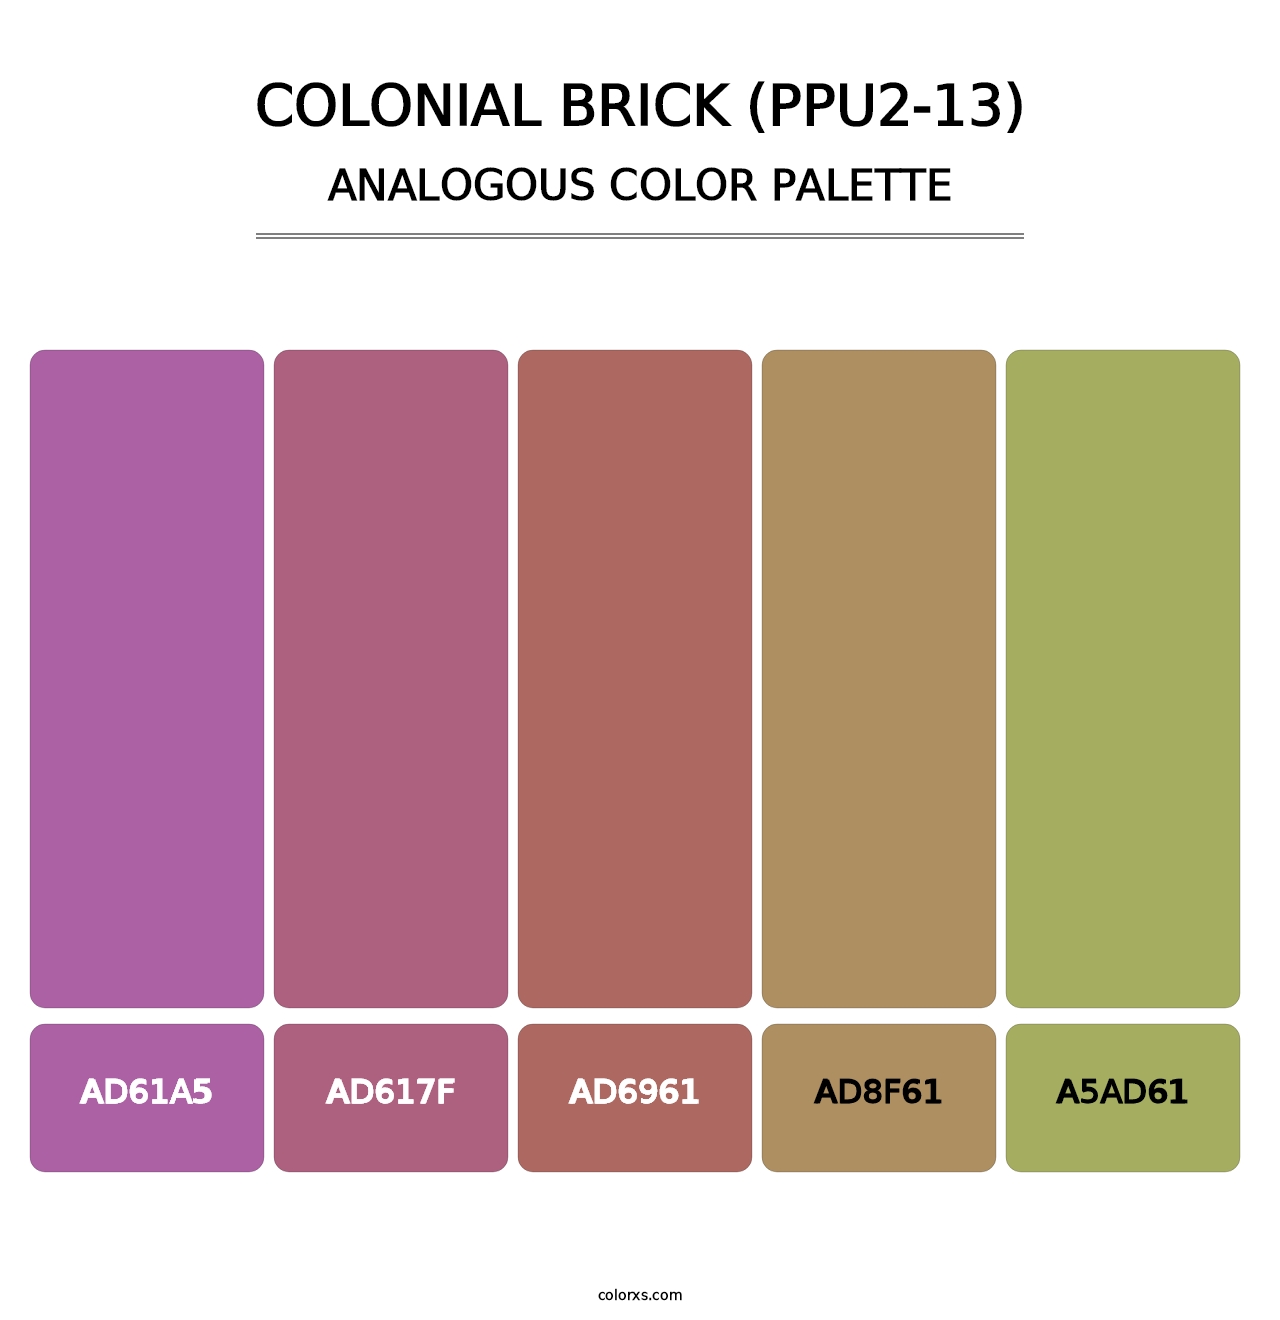 Colonial Brick (PPU2-13) - Analogous Color Palette